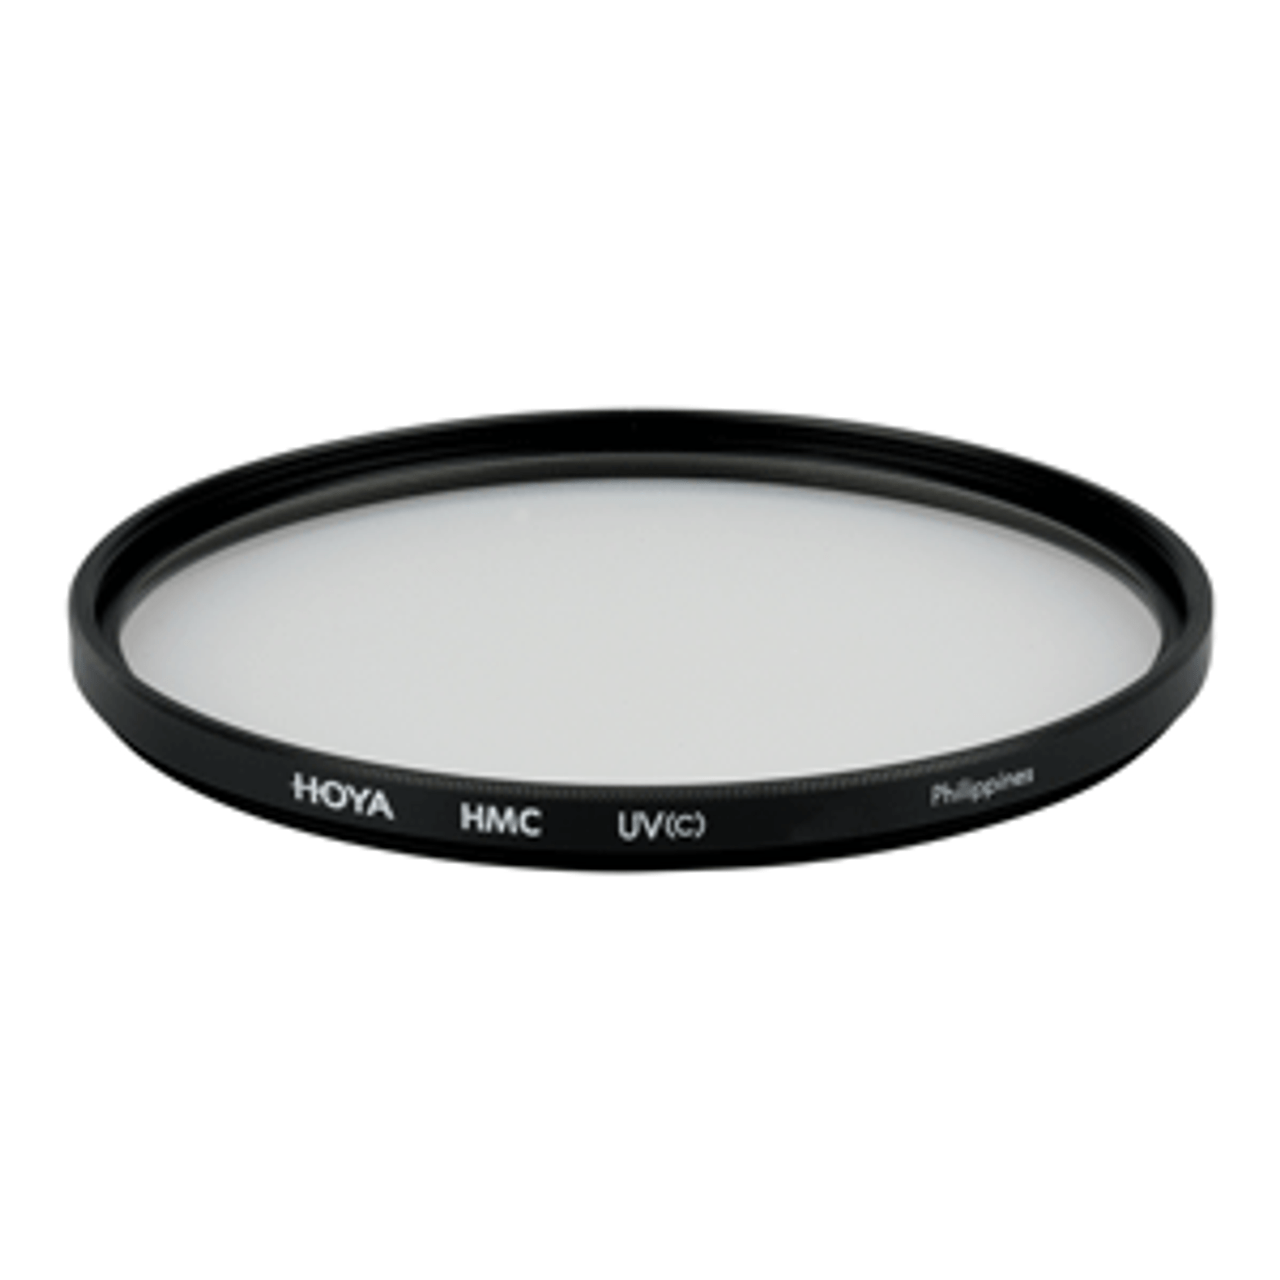 Hoya 55mm UV(C) HMC Filter